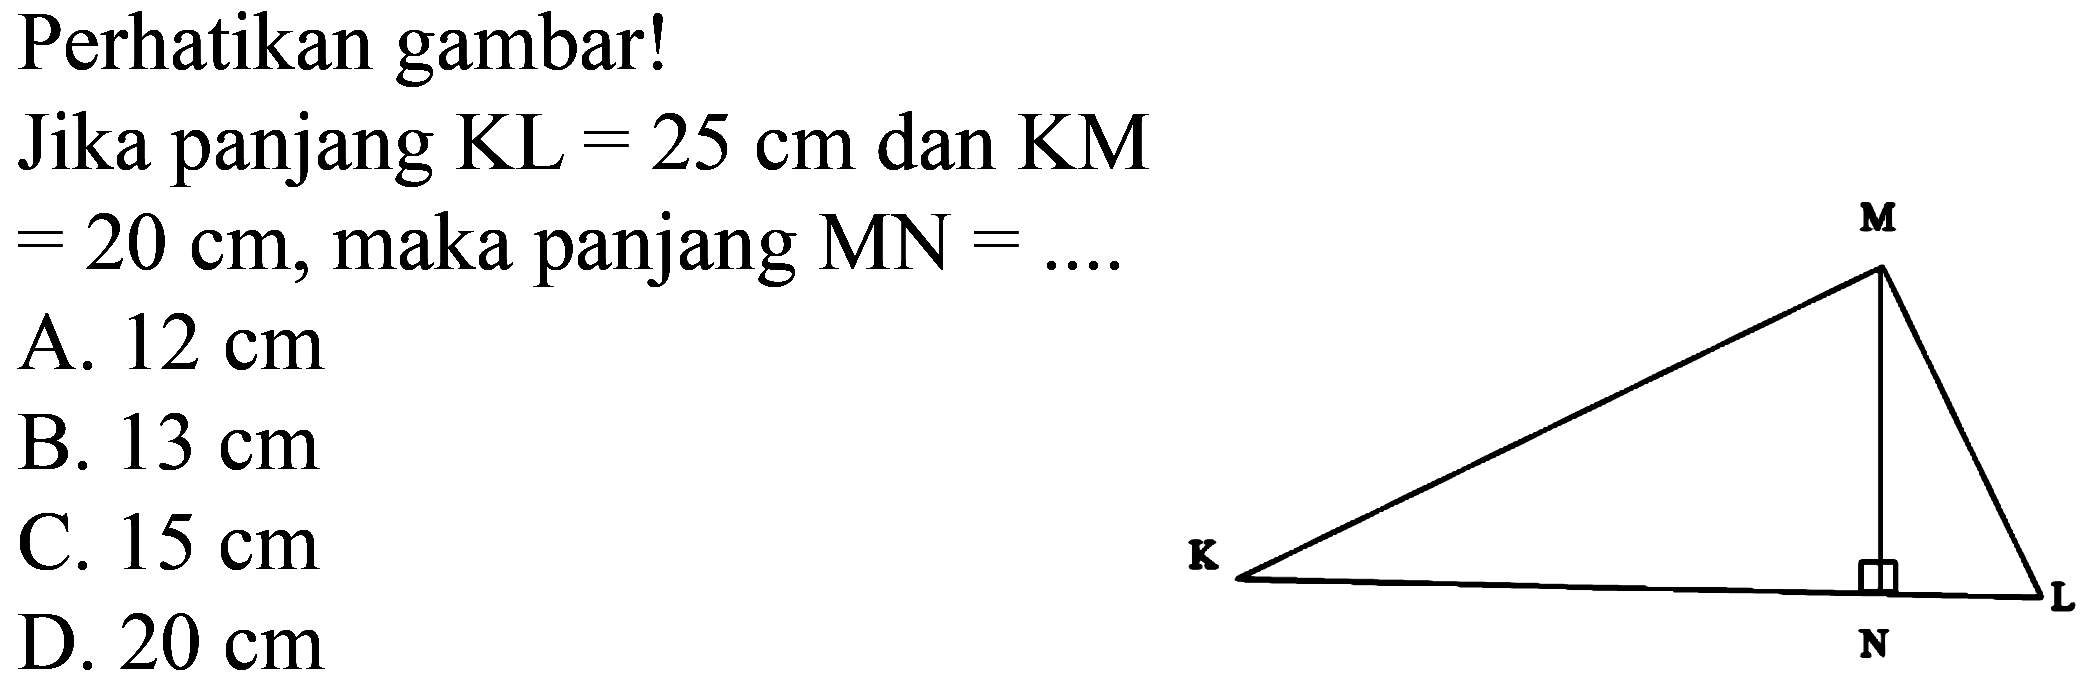 Perhatikan gambar!
Jika panjang KL = 25 cm dan KM = 20 cm, maka panjang MN = ....
A.  12 cm 
B.  13 cm 
C.  15 cm 
D.  20 cm 
K L M N 